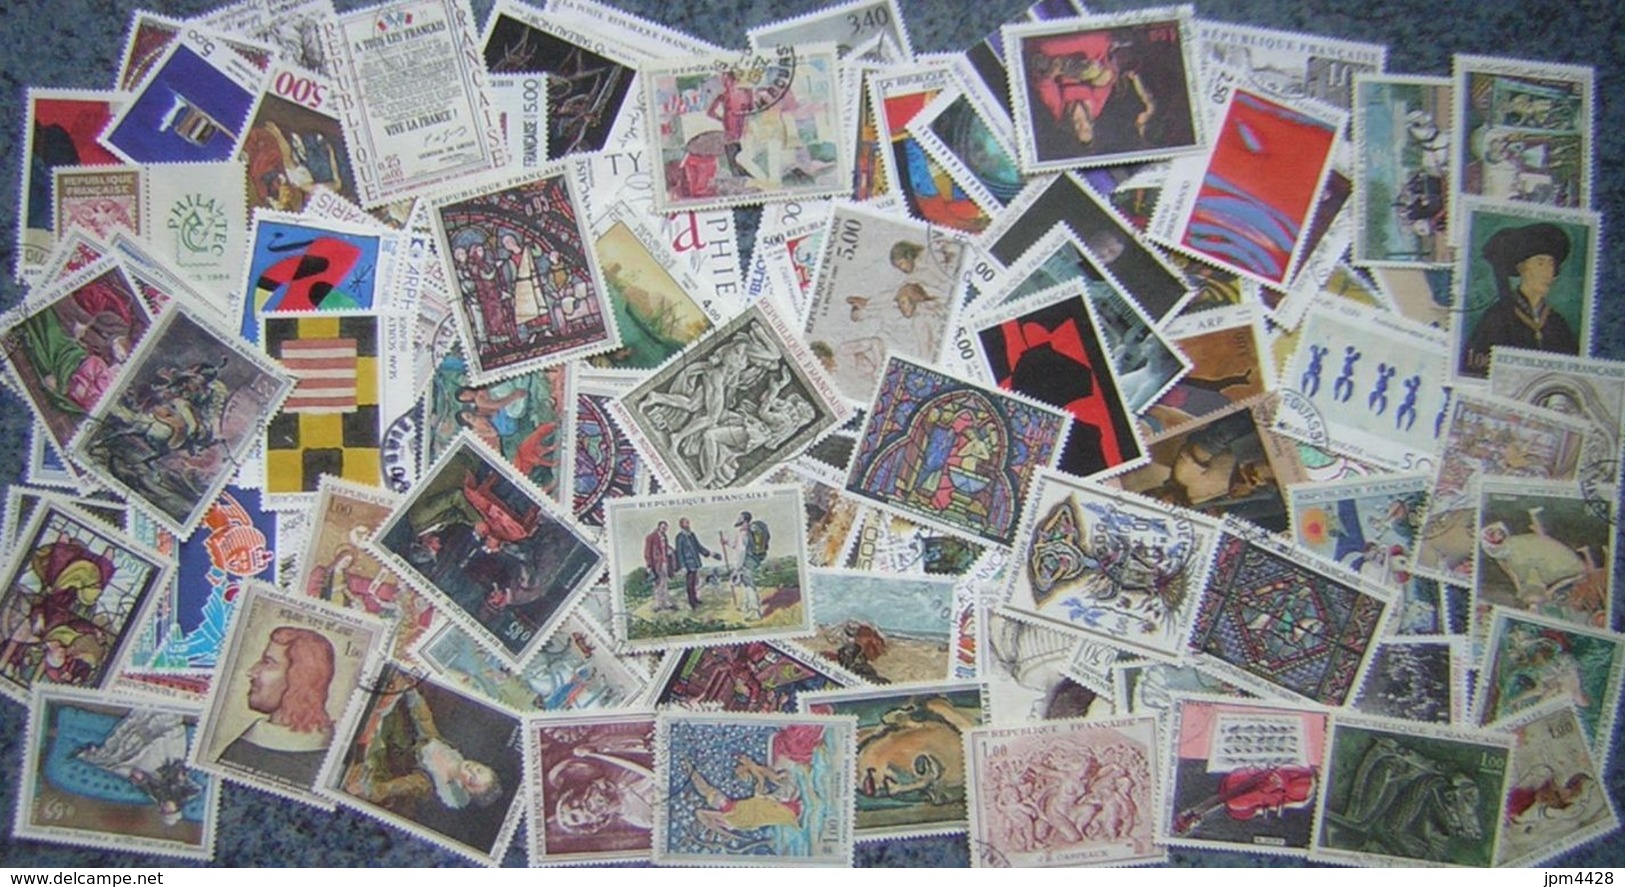 France Lot Vrac 1700 timbres oblitérés entre 1957 et 1994, majorité avec cachet rond, petits - grands formats différents